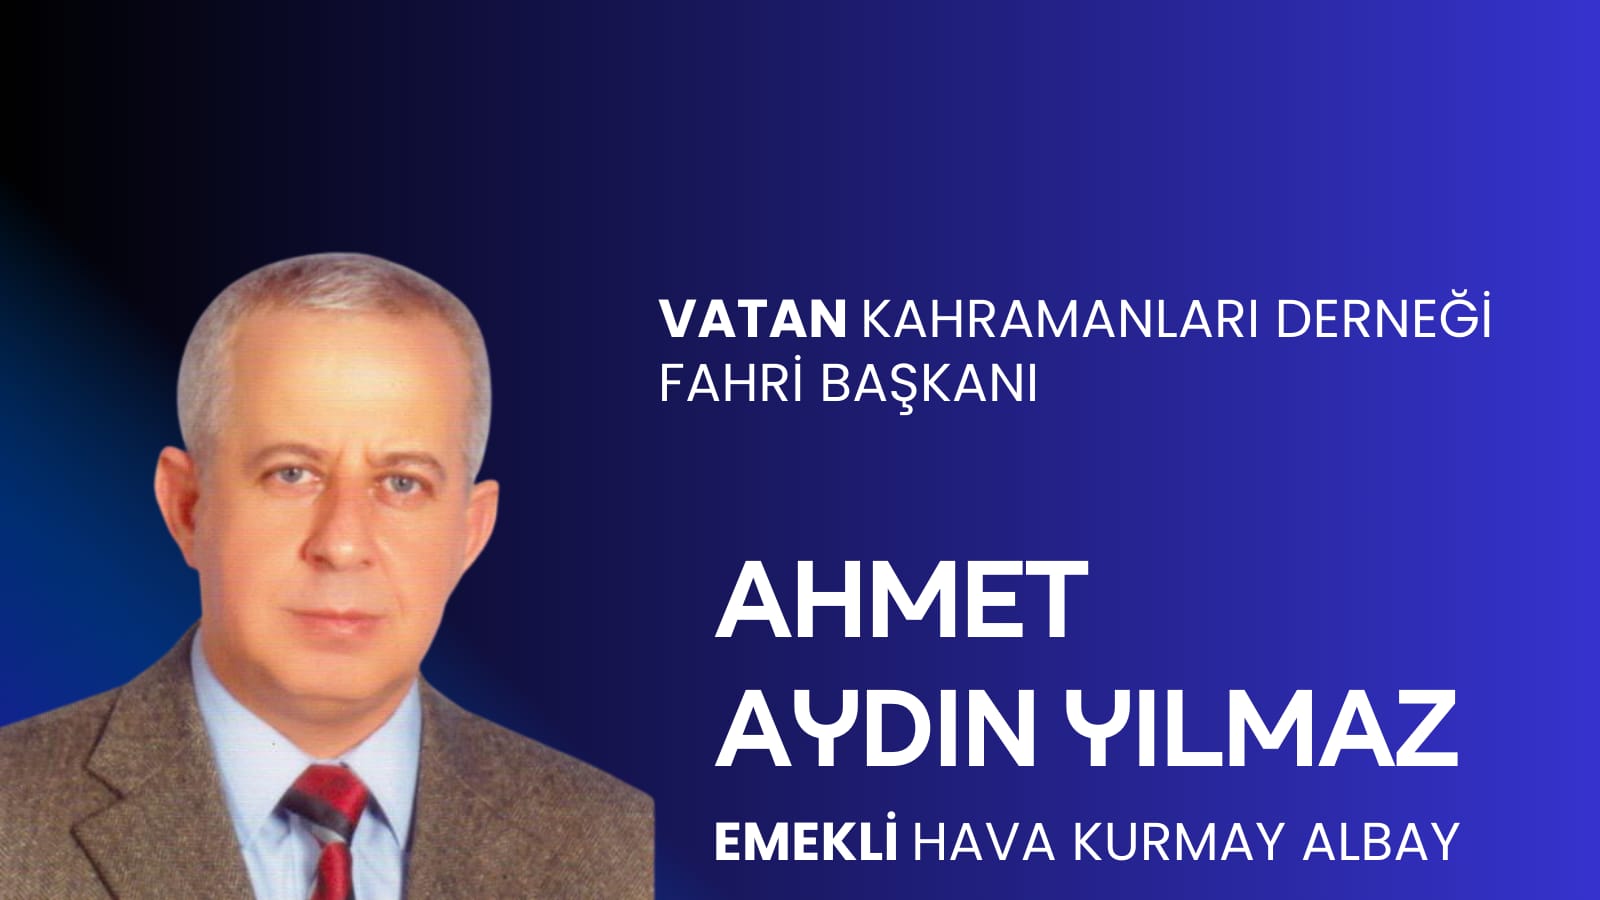 Ahmet Aydın YILMAZ